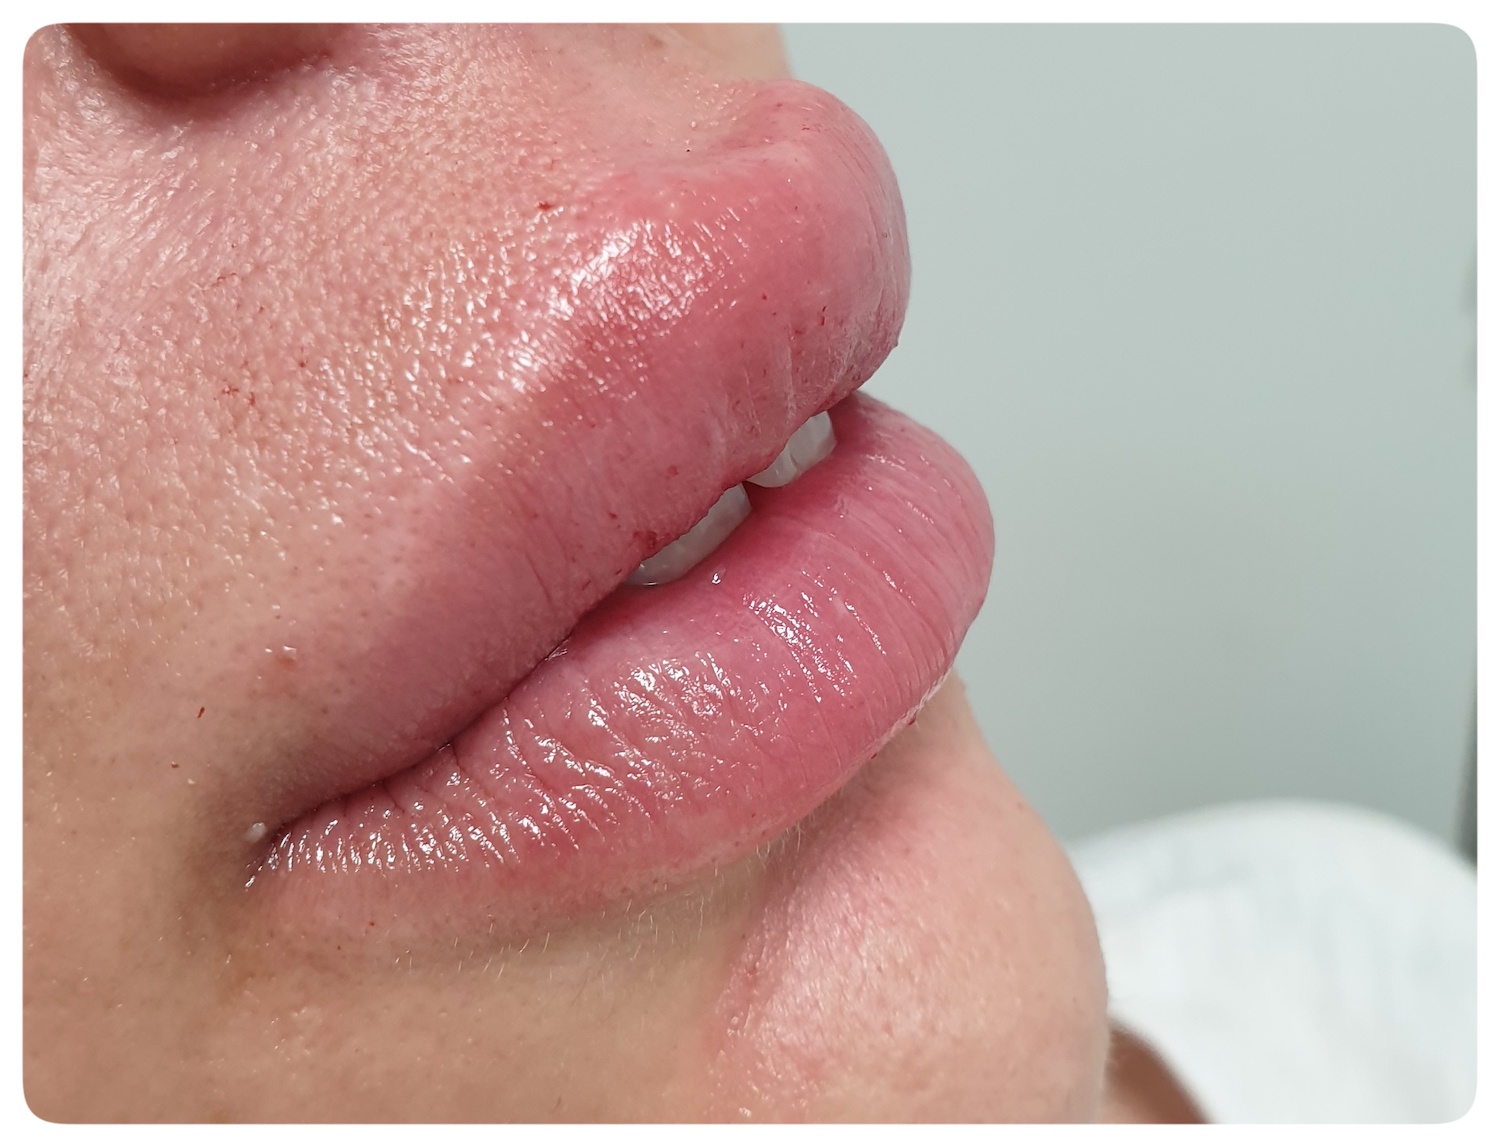 Pacijent br.1: Aplikovanje hijaluronskih filera u usne- Posle